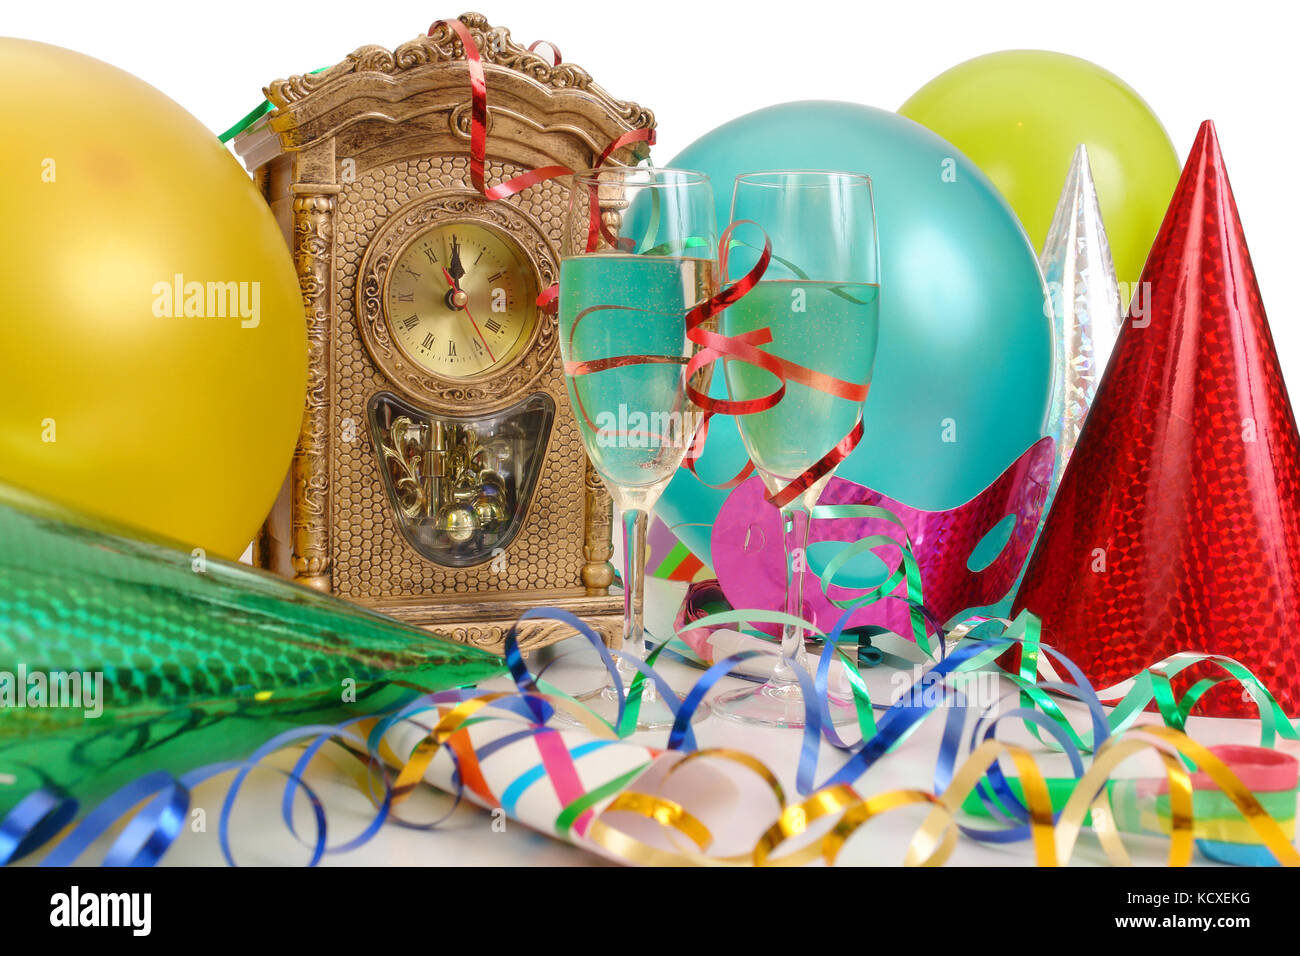 Horloge de table montrant presque nouvelle an, banderoles, ballons, chapeaux de fête et deux verres de champagne Banque D'Images